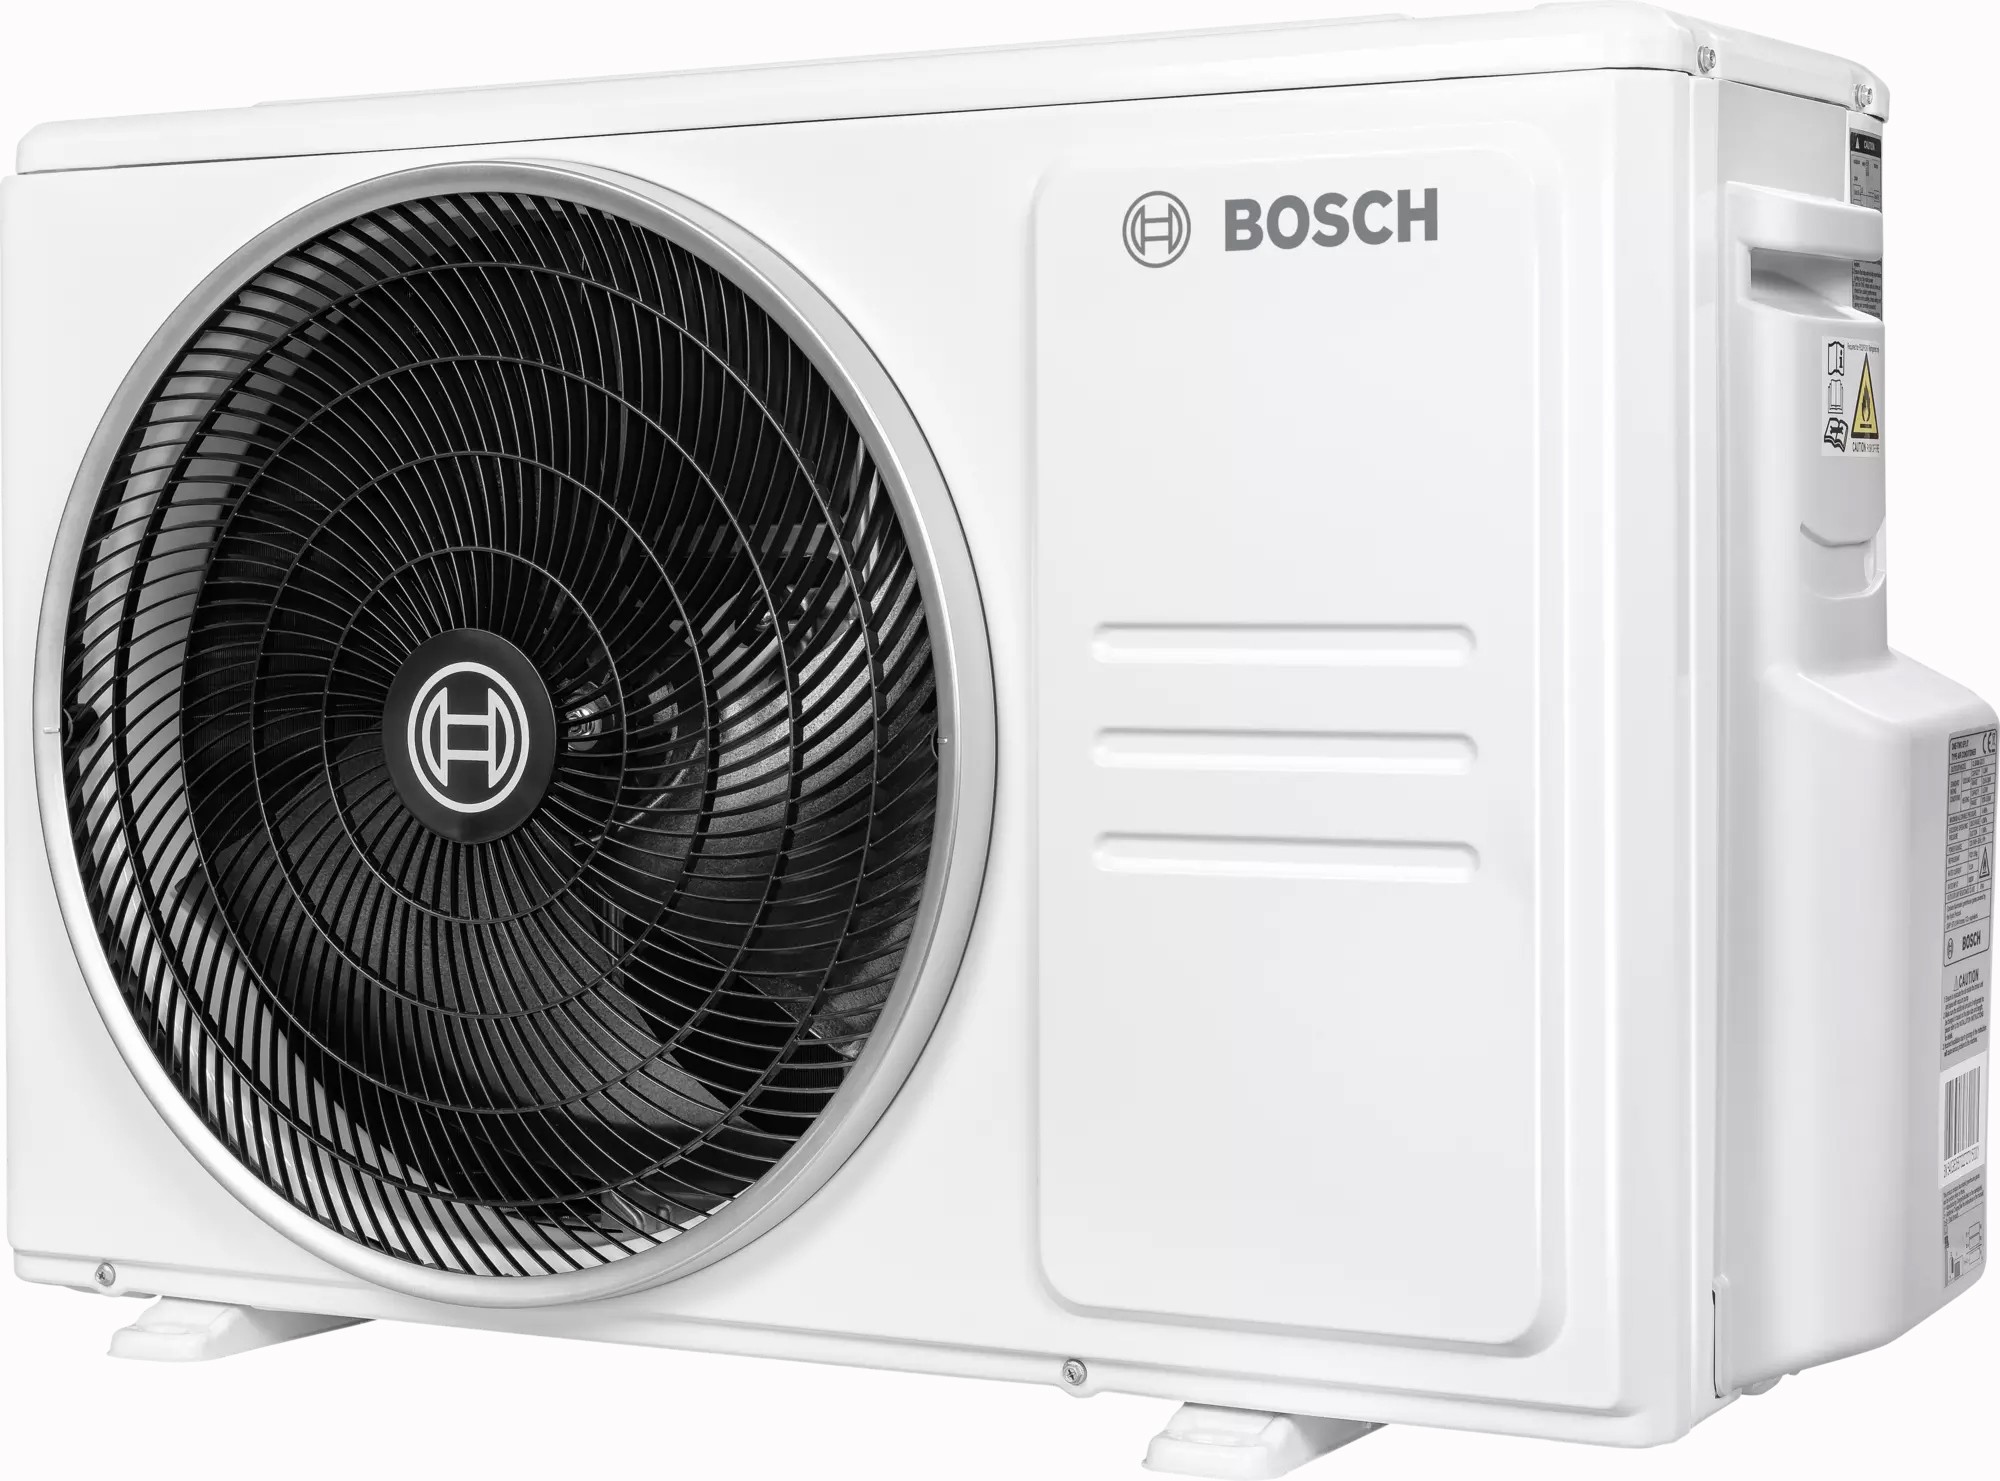 Наружный блок мультисплит-системы Bosch CL5000M 53/2 E, 5,3 кВт отзывы - изображения 5